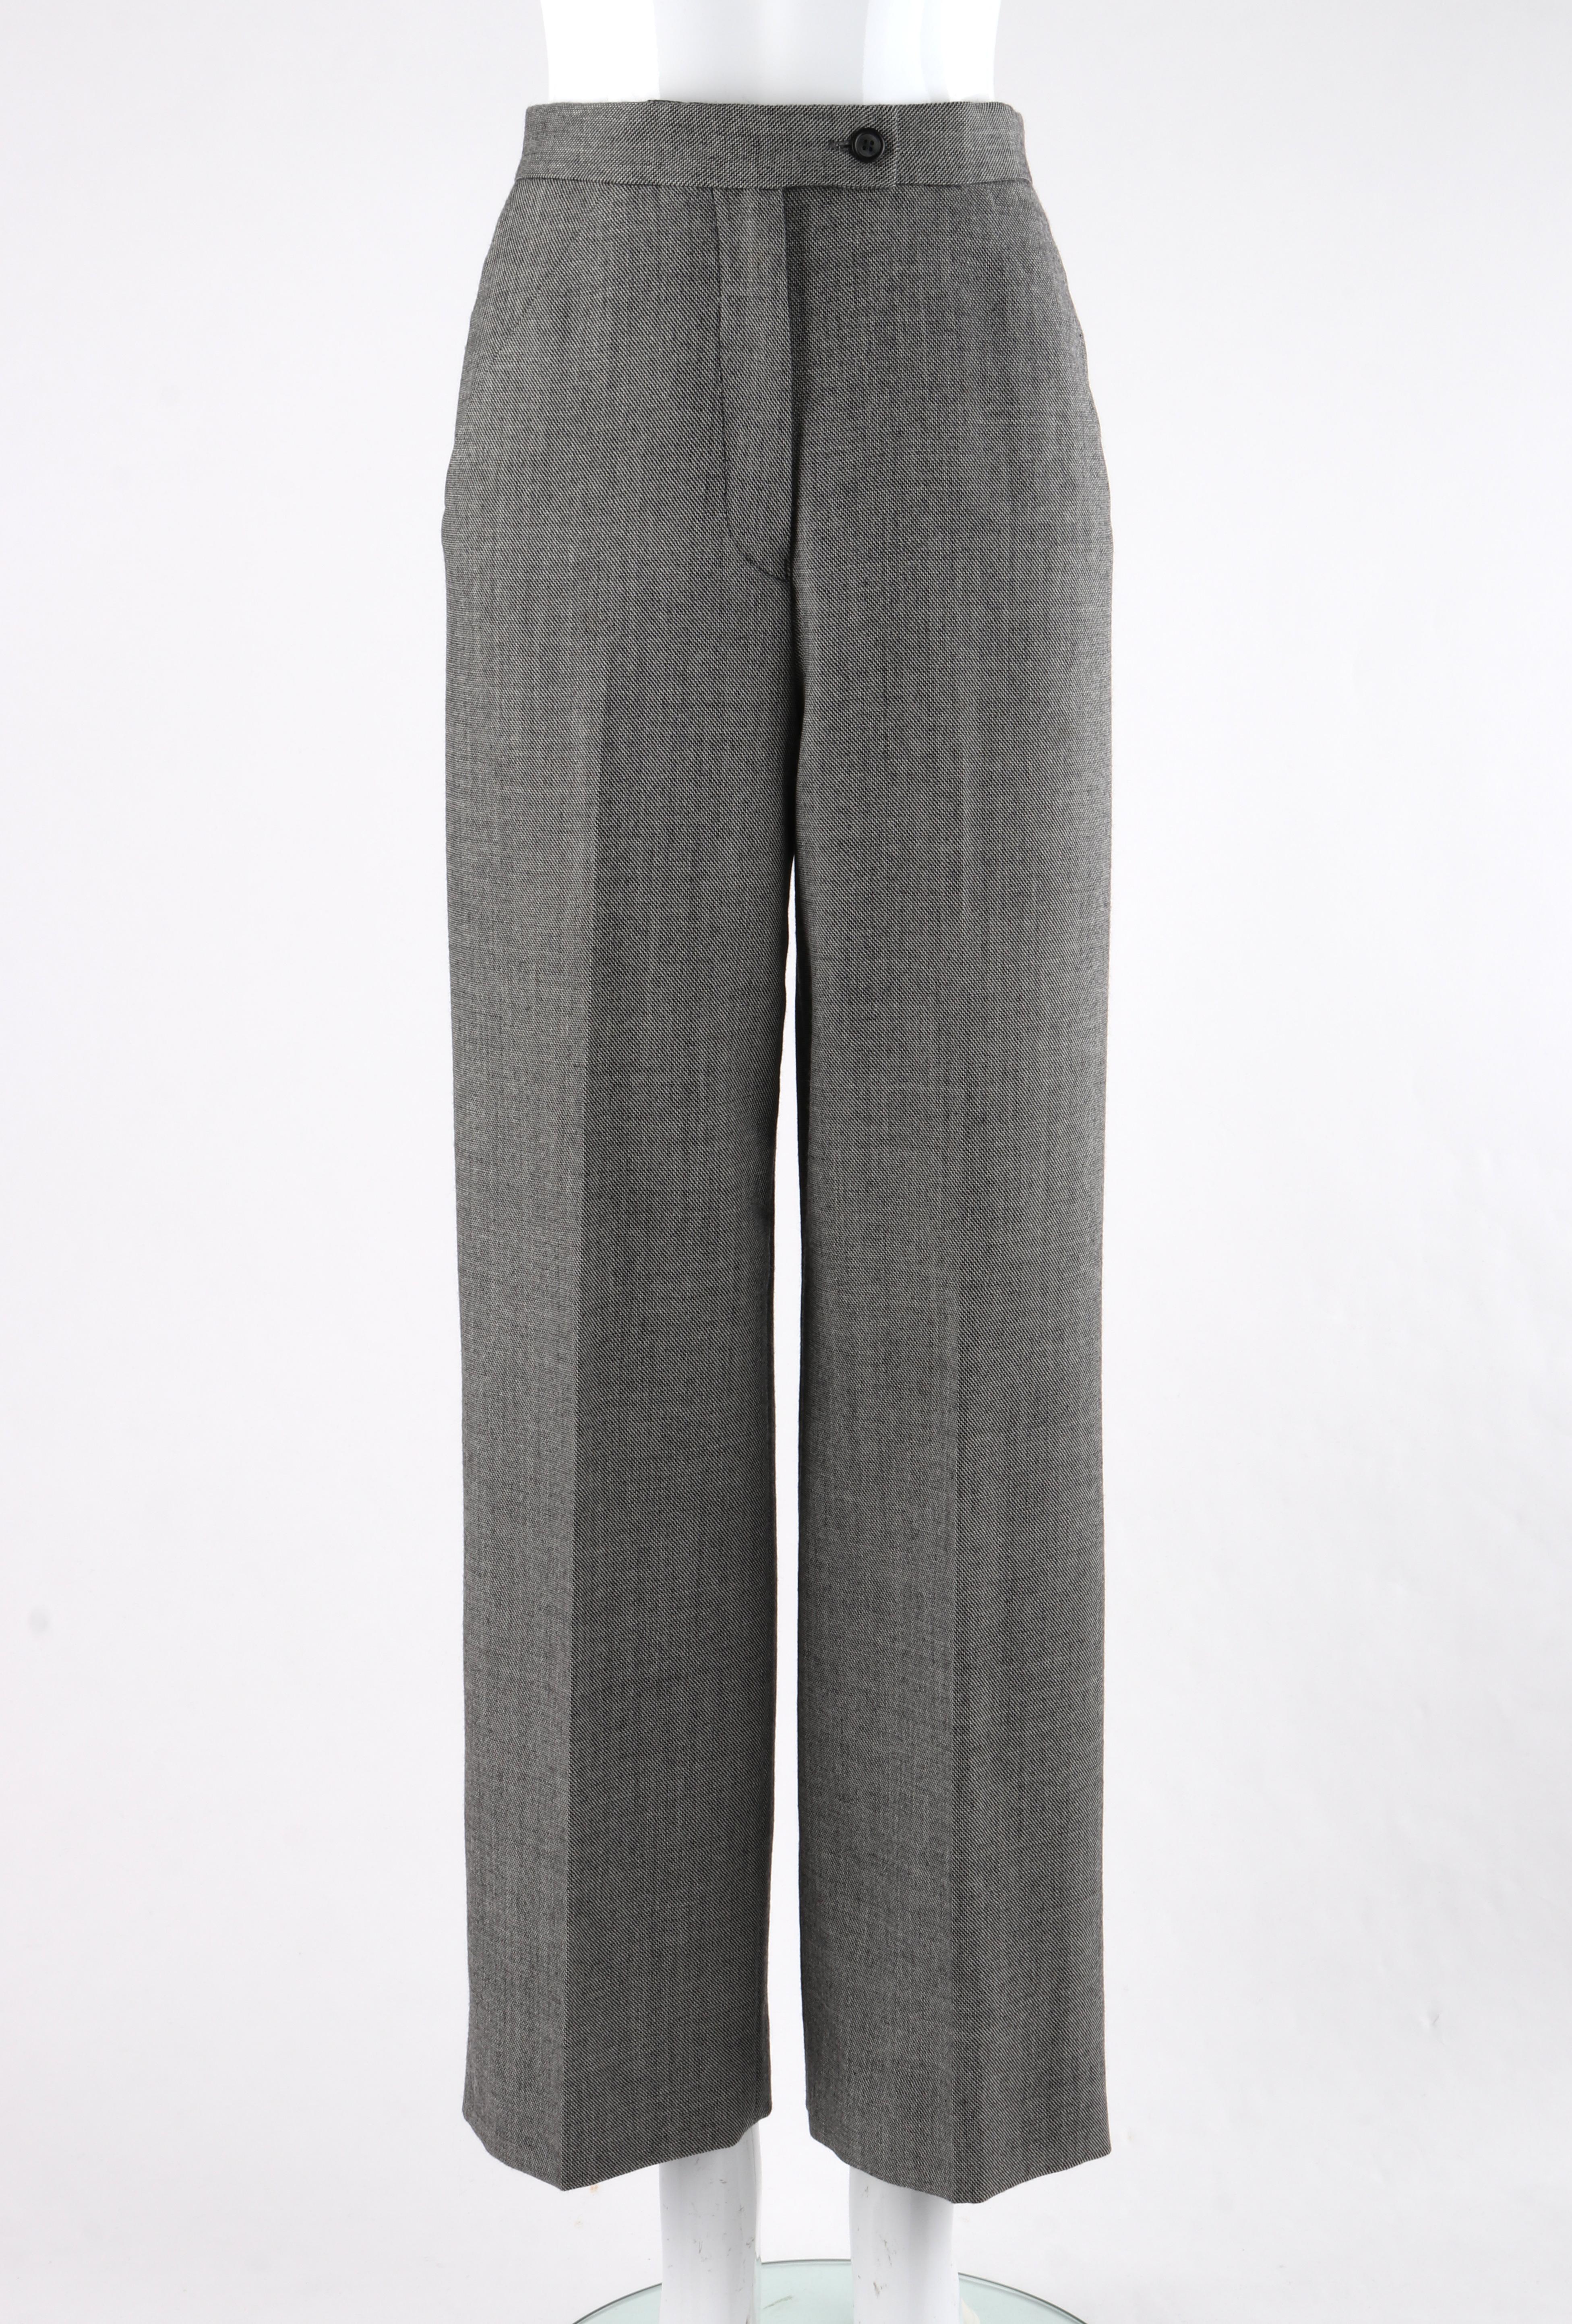 Women's or Men's ALEXANDER McQUEEN A/W 1998 “Joan” Gray Blazer Jacket Wide Leg Trouser Pant Suit For Sale